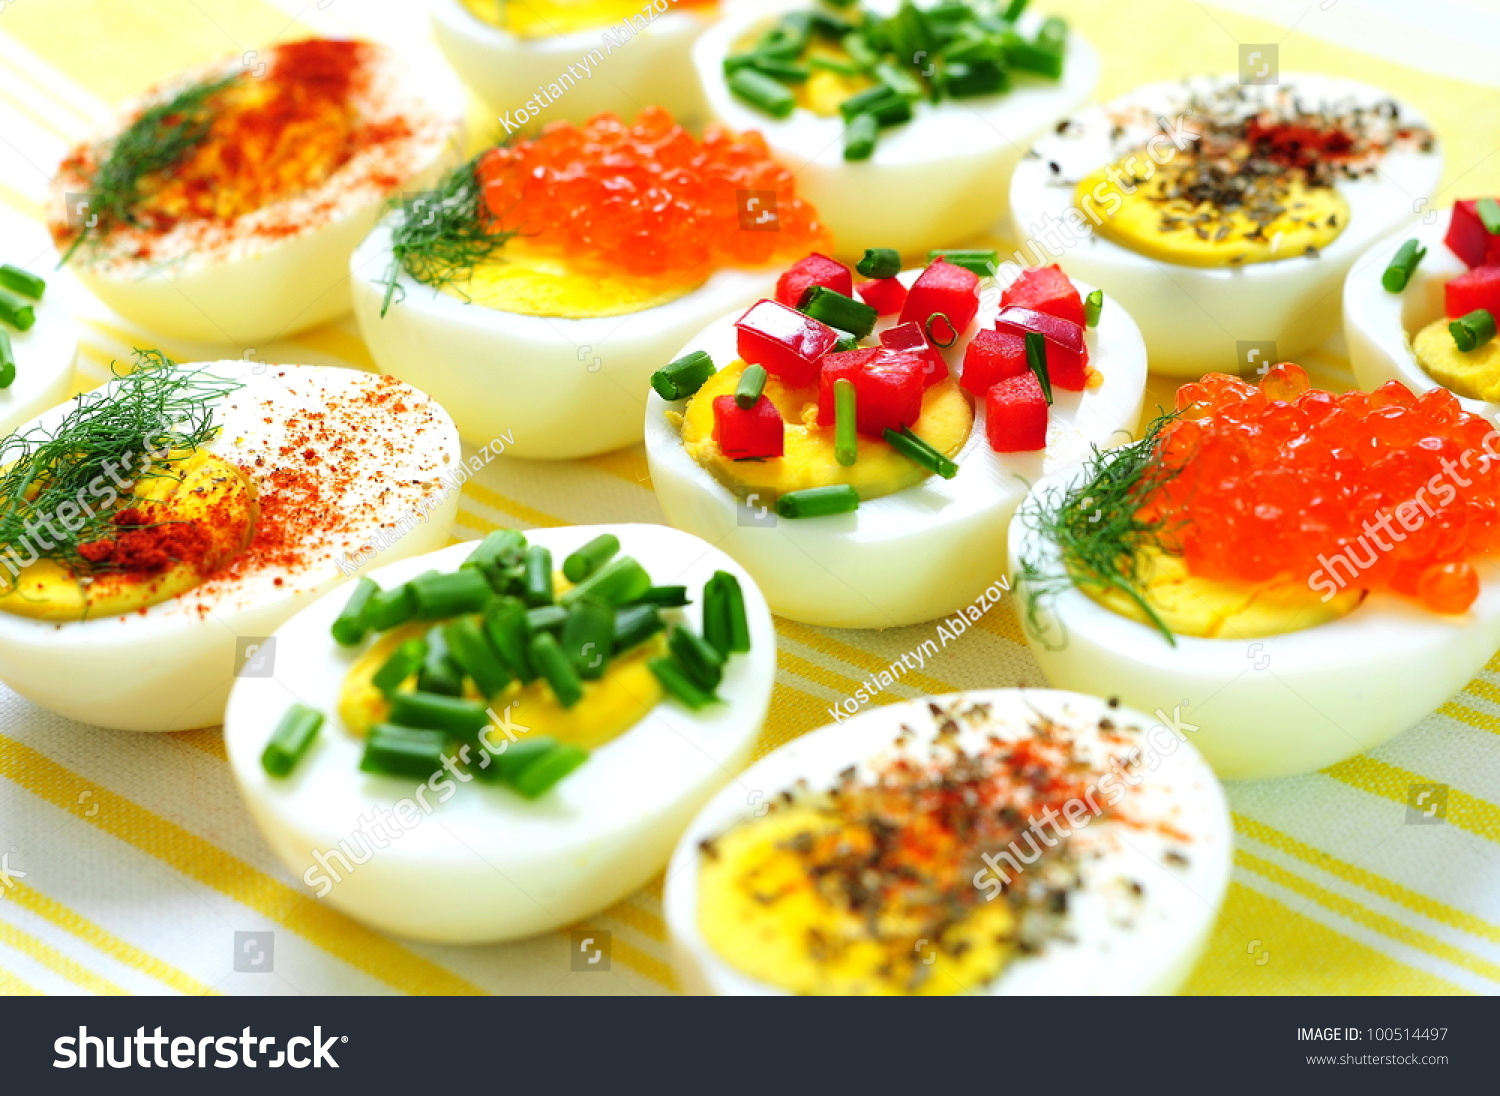 Блюдо из яиц и овощей. Блюда и закуски из яиц. Красивые закуски из яиц. Фаршированные яйца. Украшение фаршированных яиц.